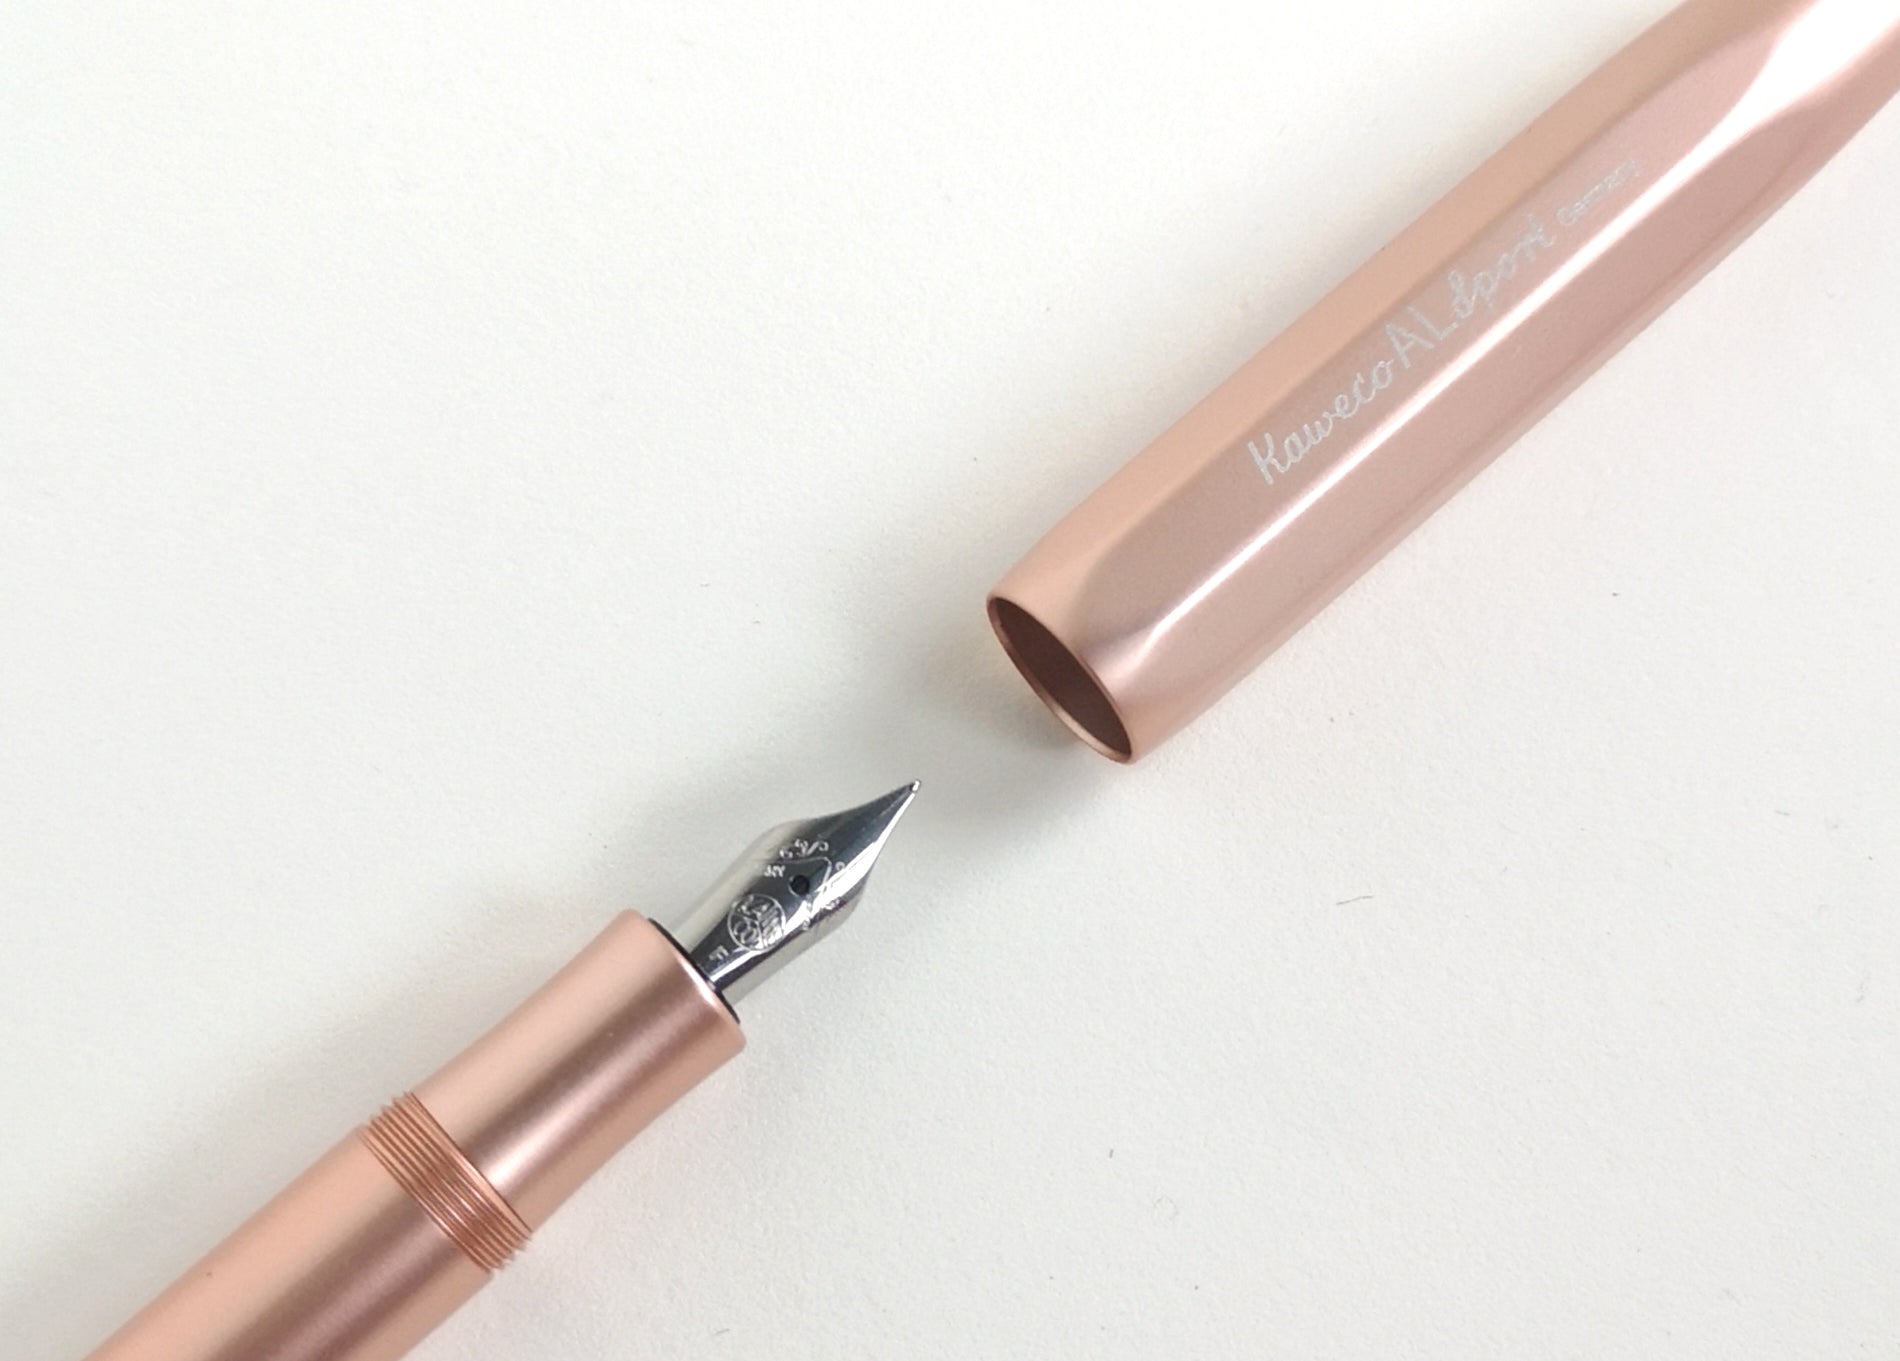 Kaweco Rose Gold Aluminium Fountain Pen nib close-up